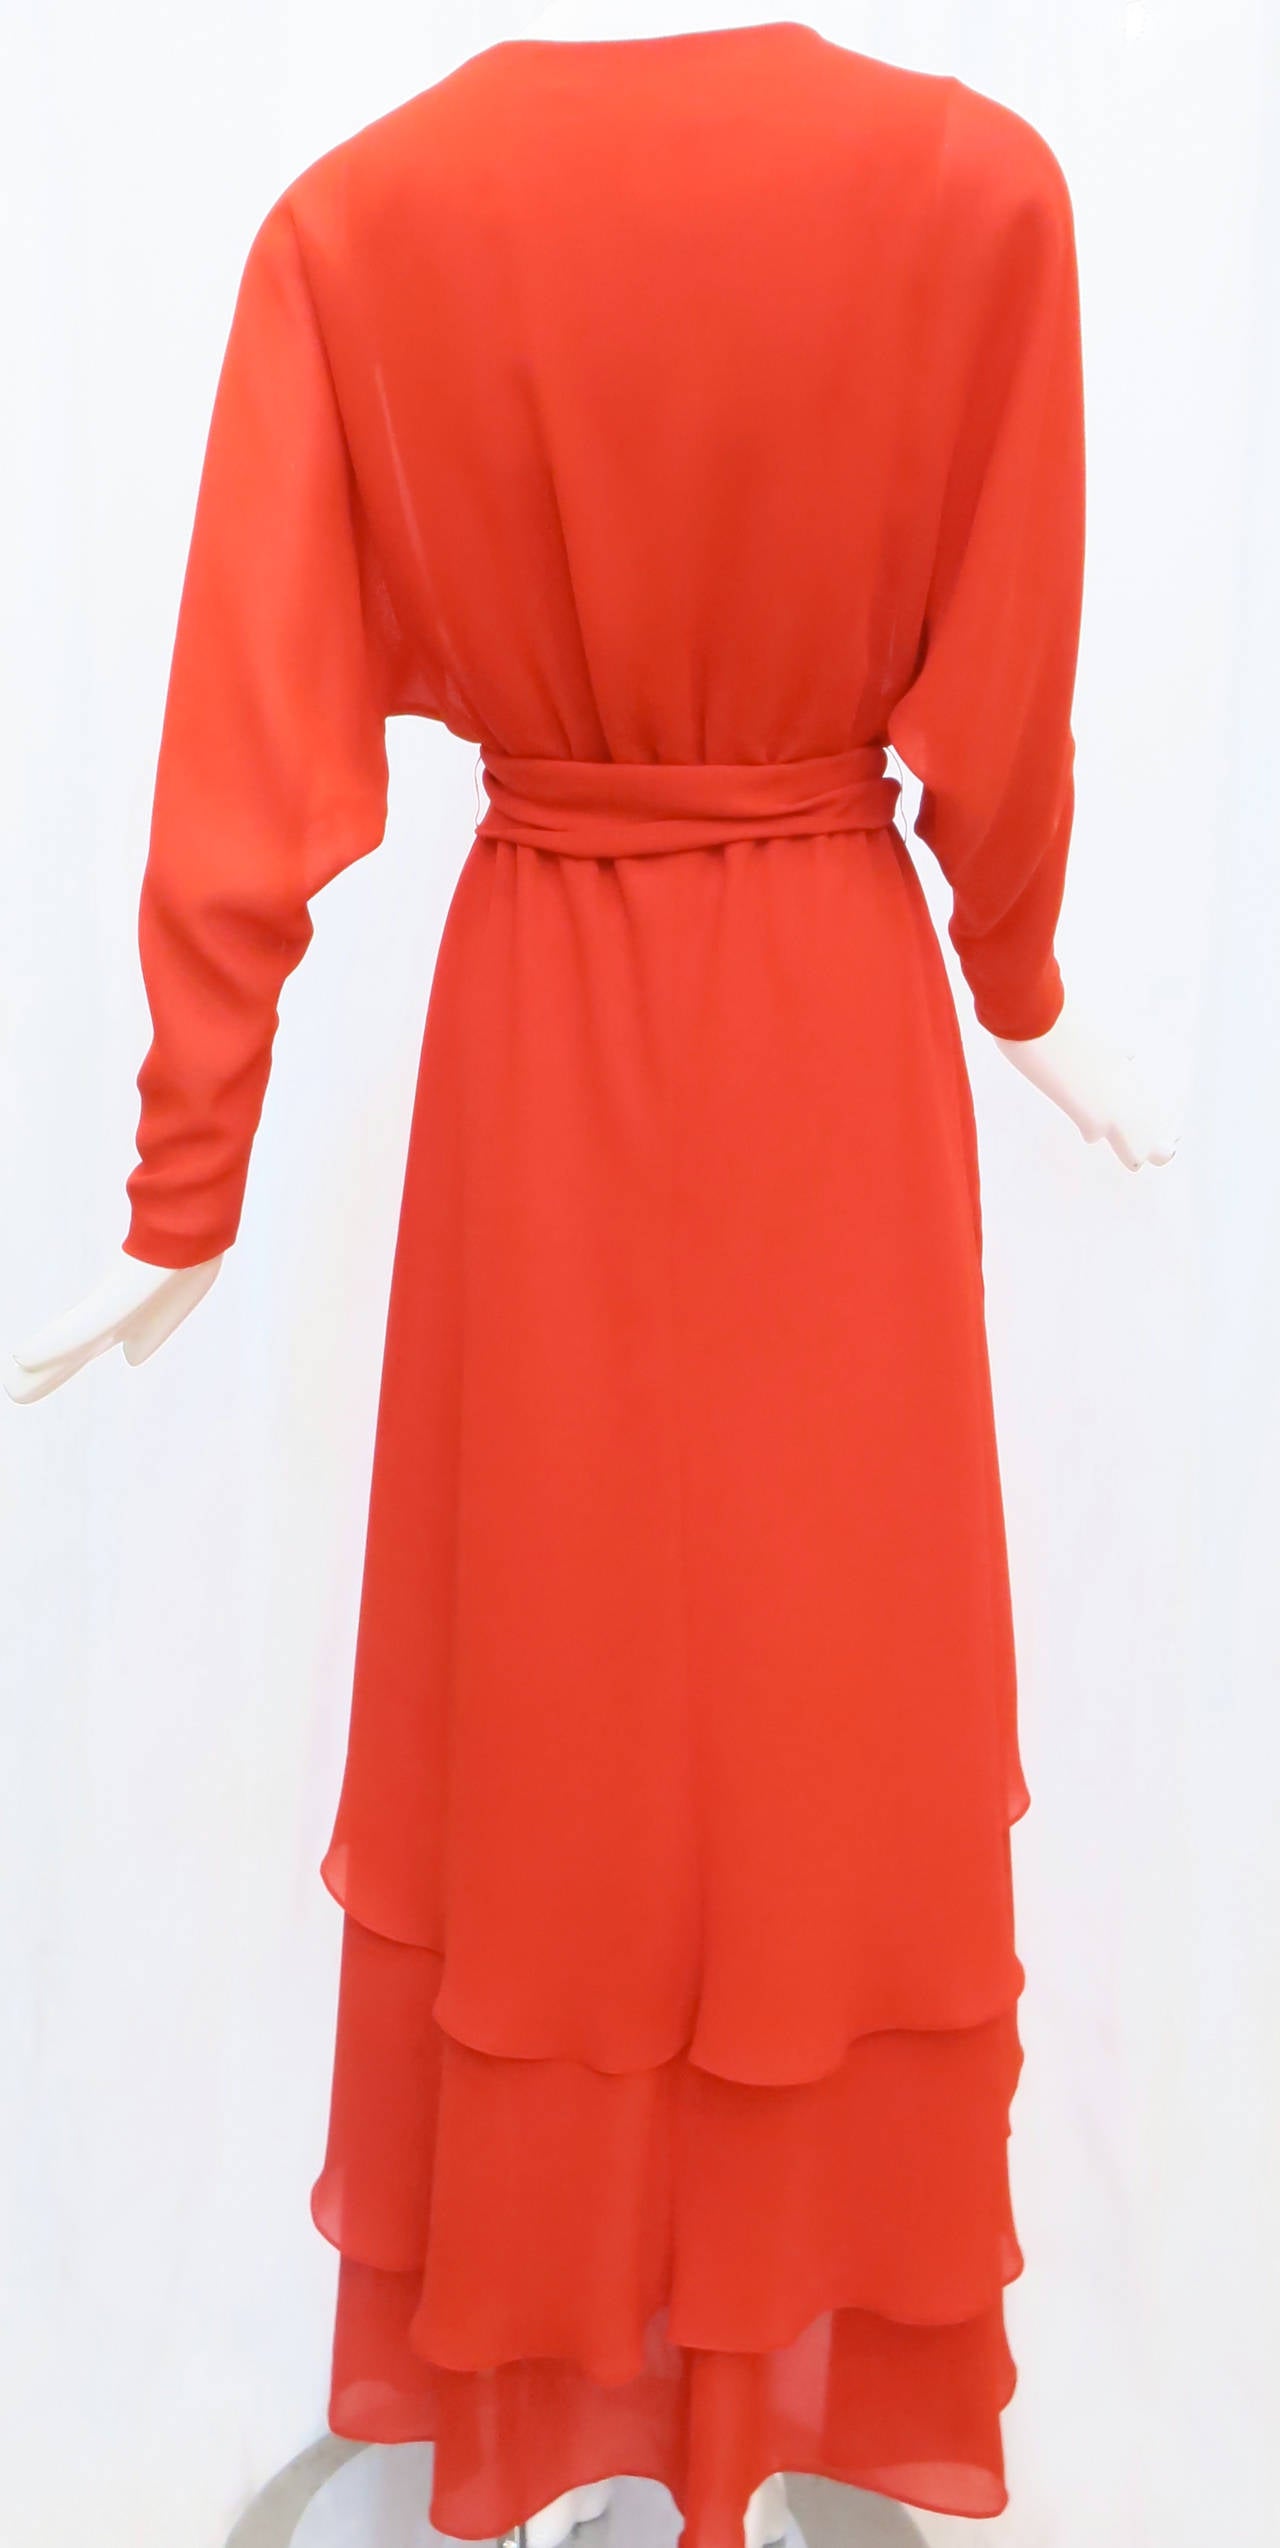 Women's 1970s Robert Courtney Fire Red Chiffon Wrap Dress